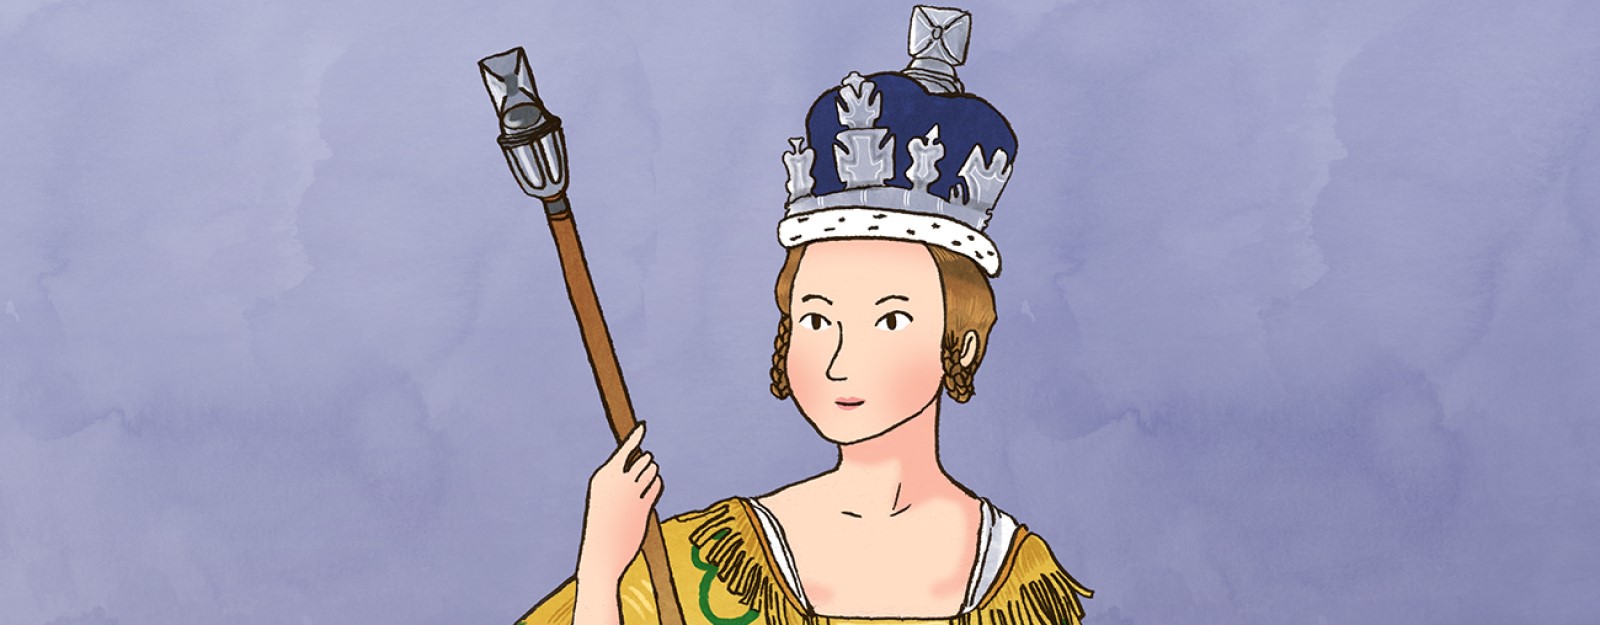 Illustration of Queen Victoria